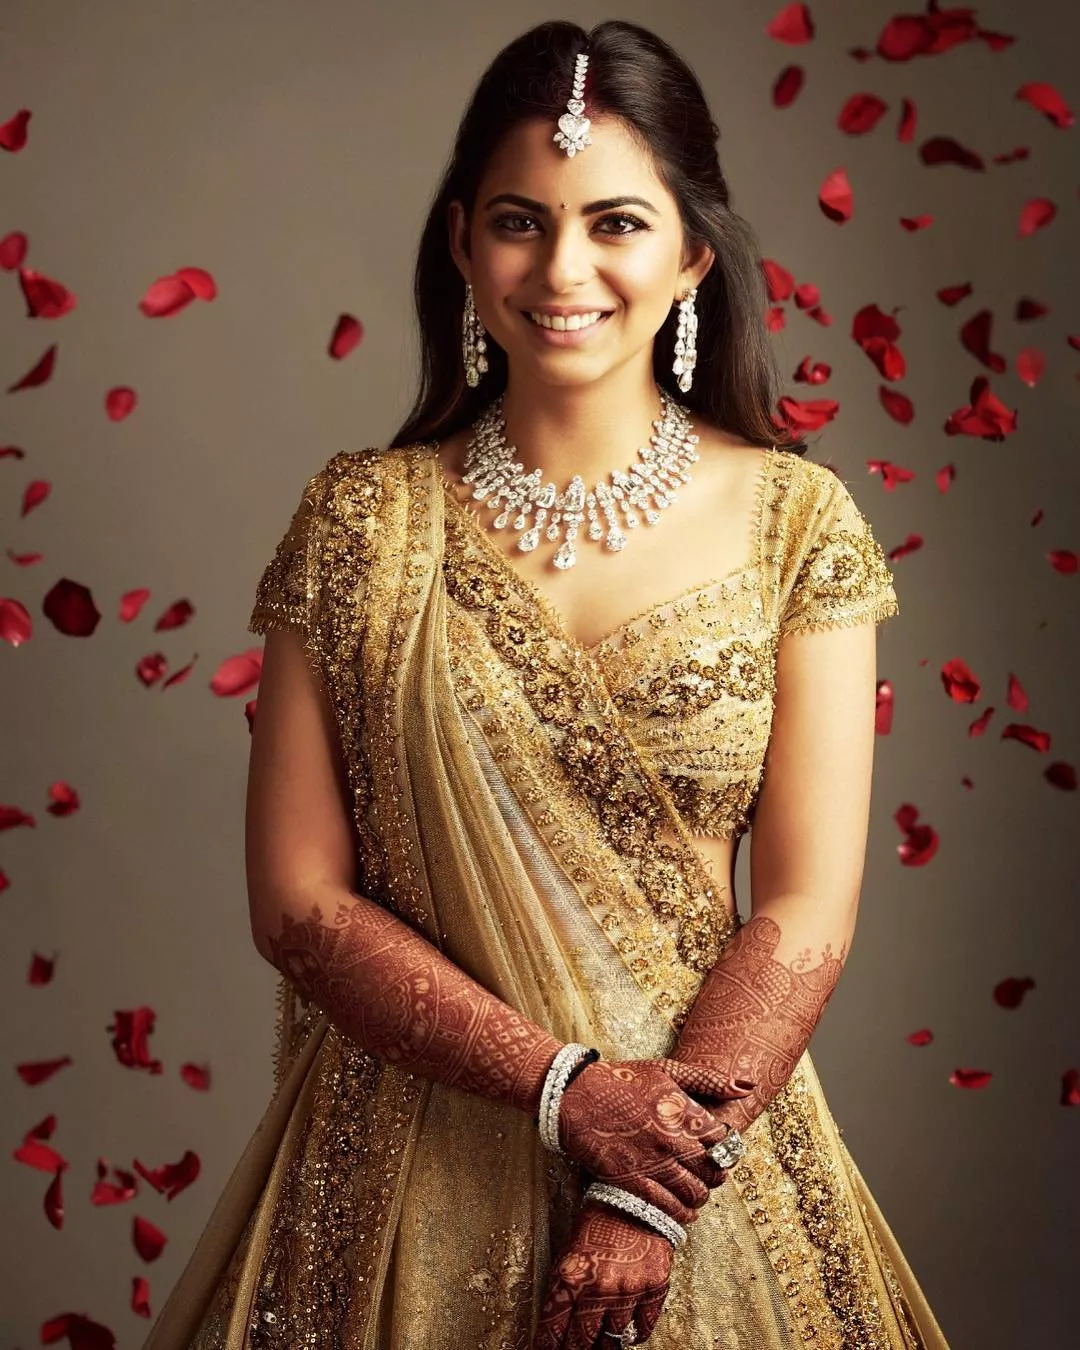 حفل زفاف ضخم لإبنة أغنى رجل في الهند بكلفة 100 مليون دولار!